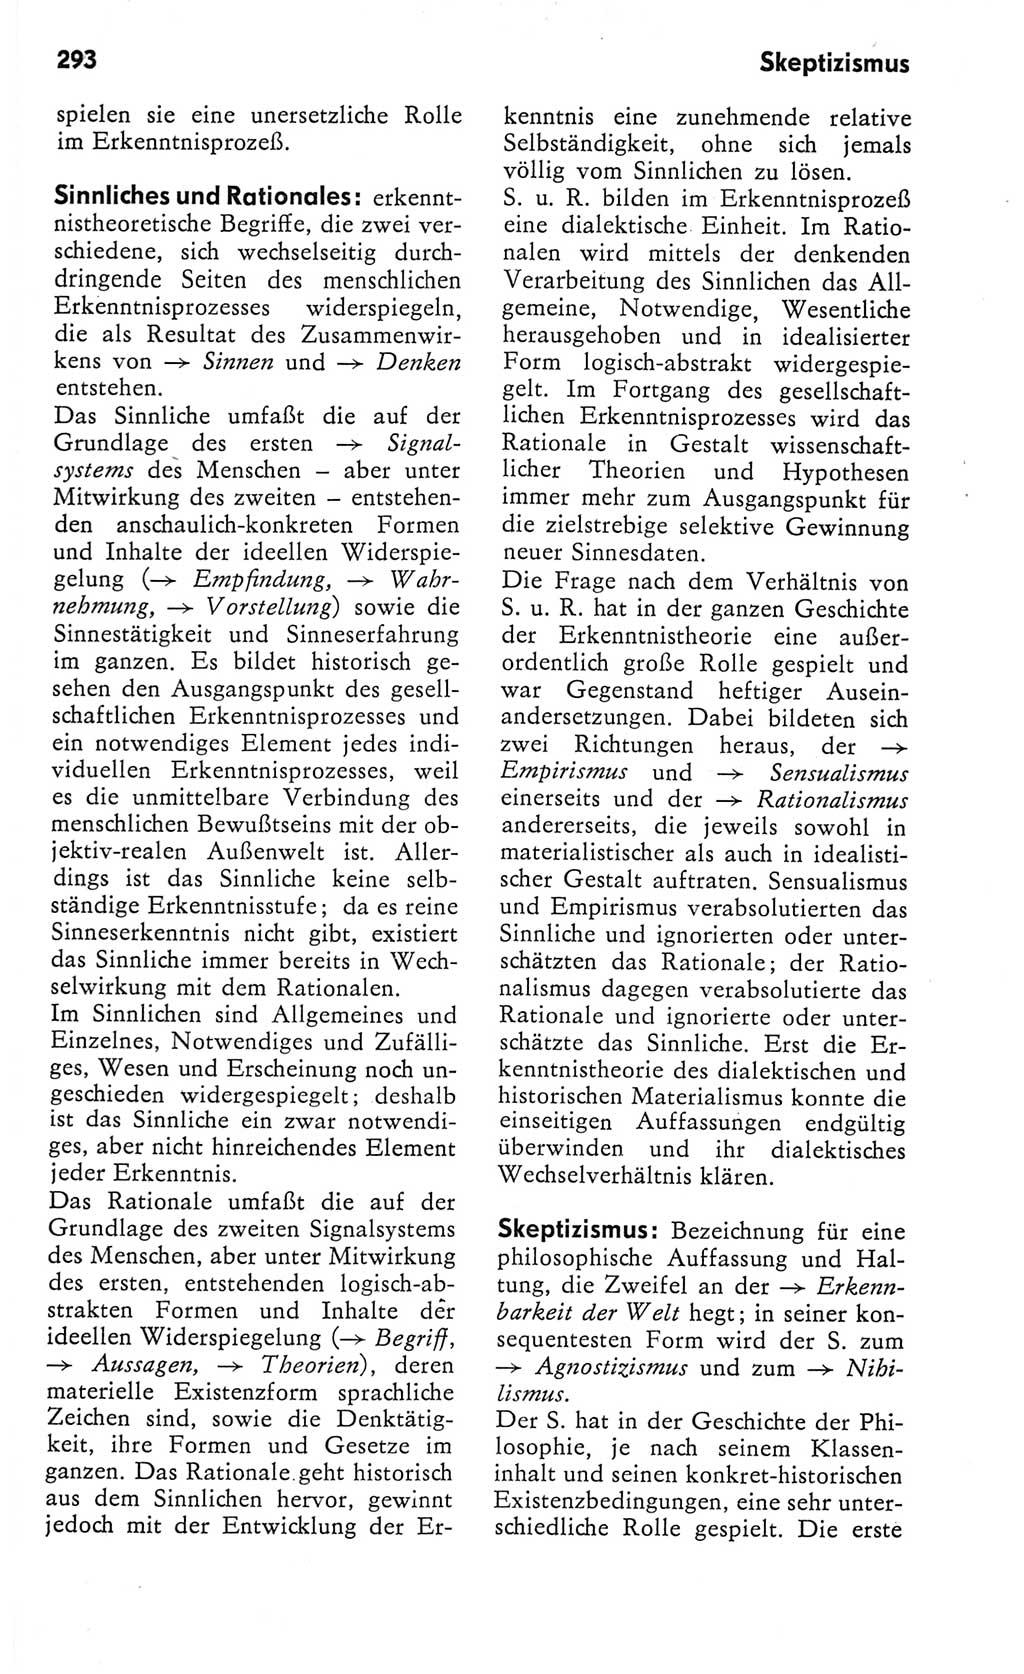 Kleines Wörterbuch der marxistisch-leninistischen Philosophie [Deutsche Demokratische Republik (DDR)] 1982, Seite 293 (Kl. Wb. ML Phil. DDR 1982, S. 293)